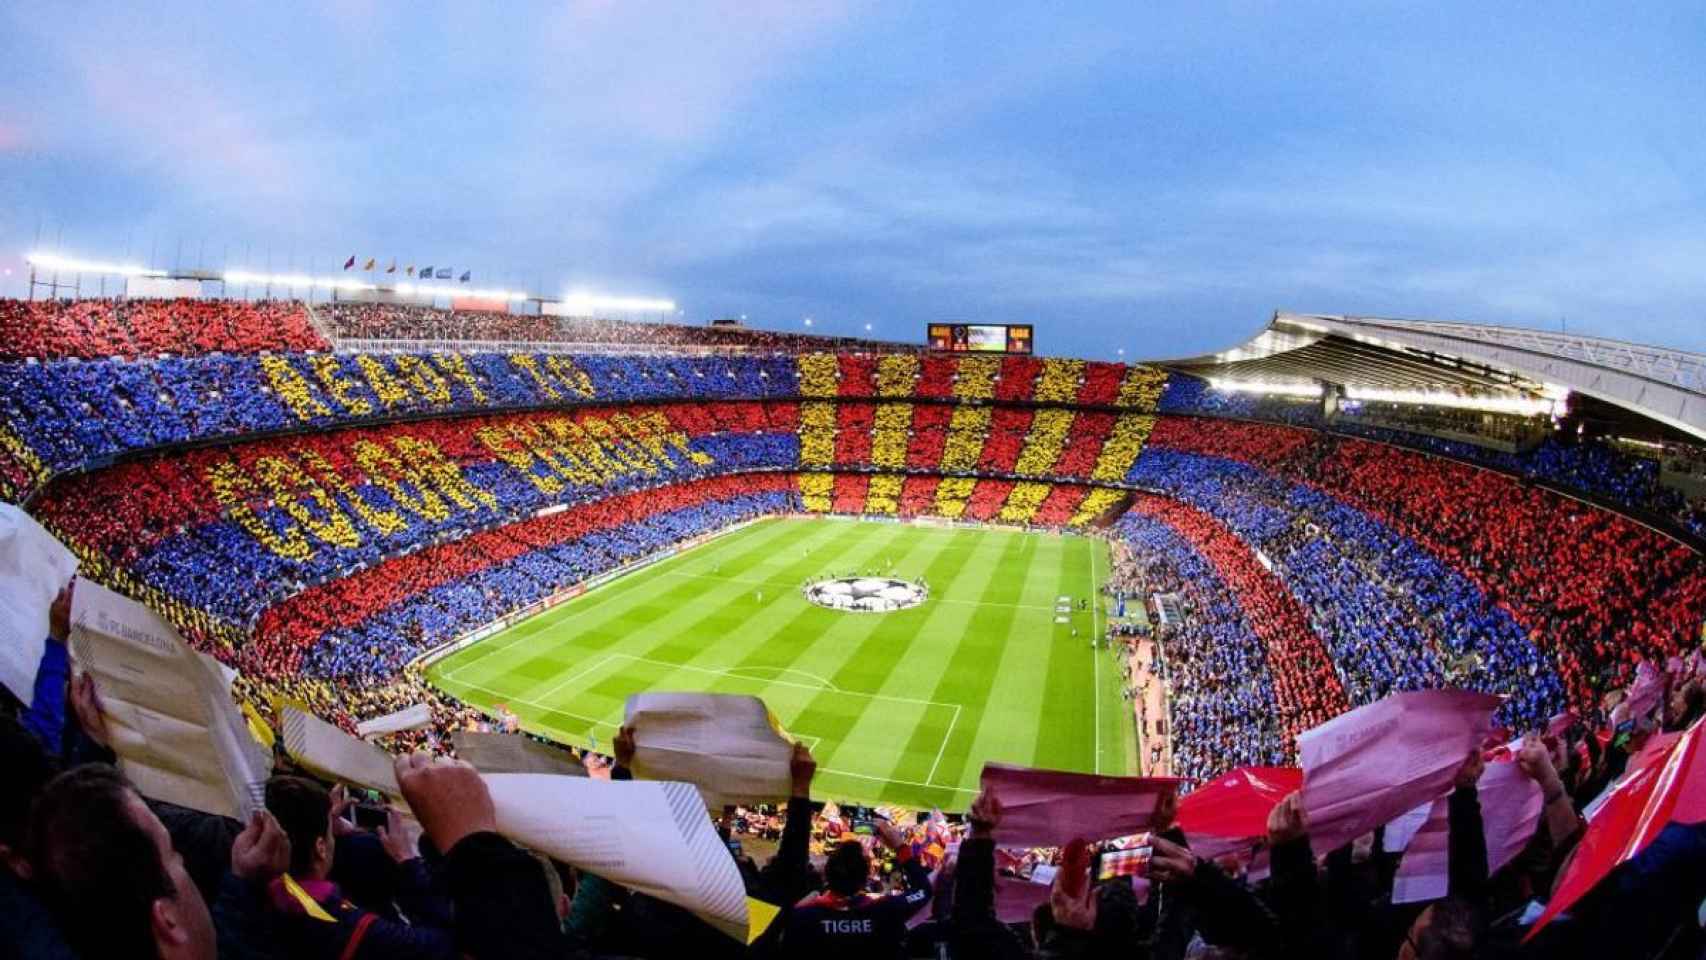 El Camp Nou, lleno de aficionados, en un partido del Barça / FCB